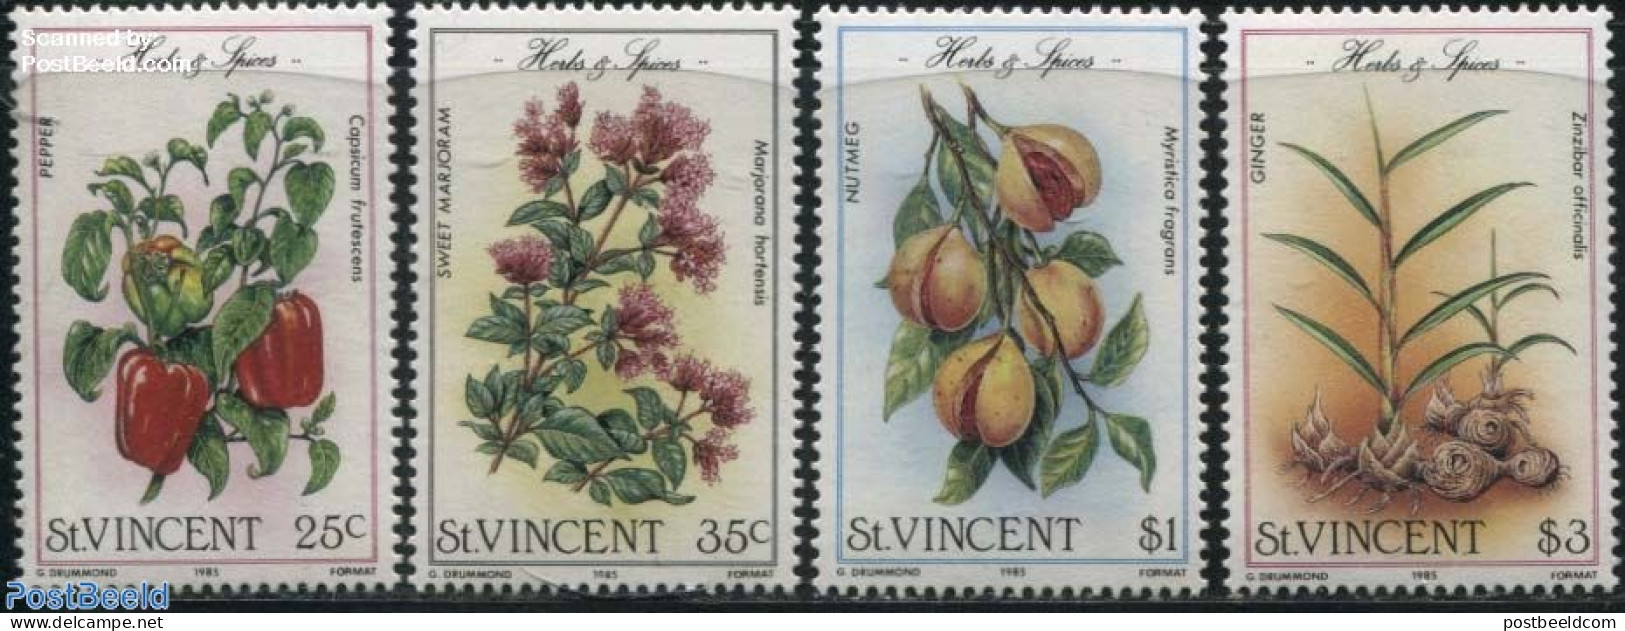 Saint Vincent 1985 Flowers & Fruits 4v, Mint NH, Nature - Flowers & Plants - Fruit - Fruit